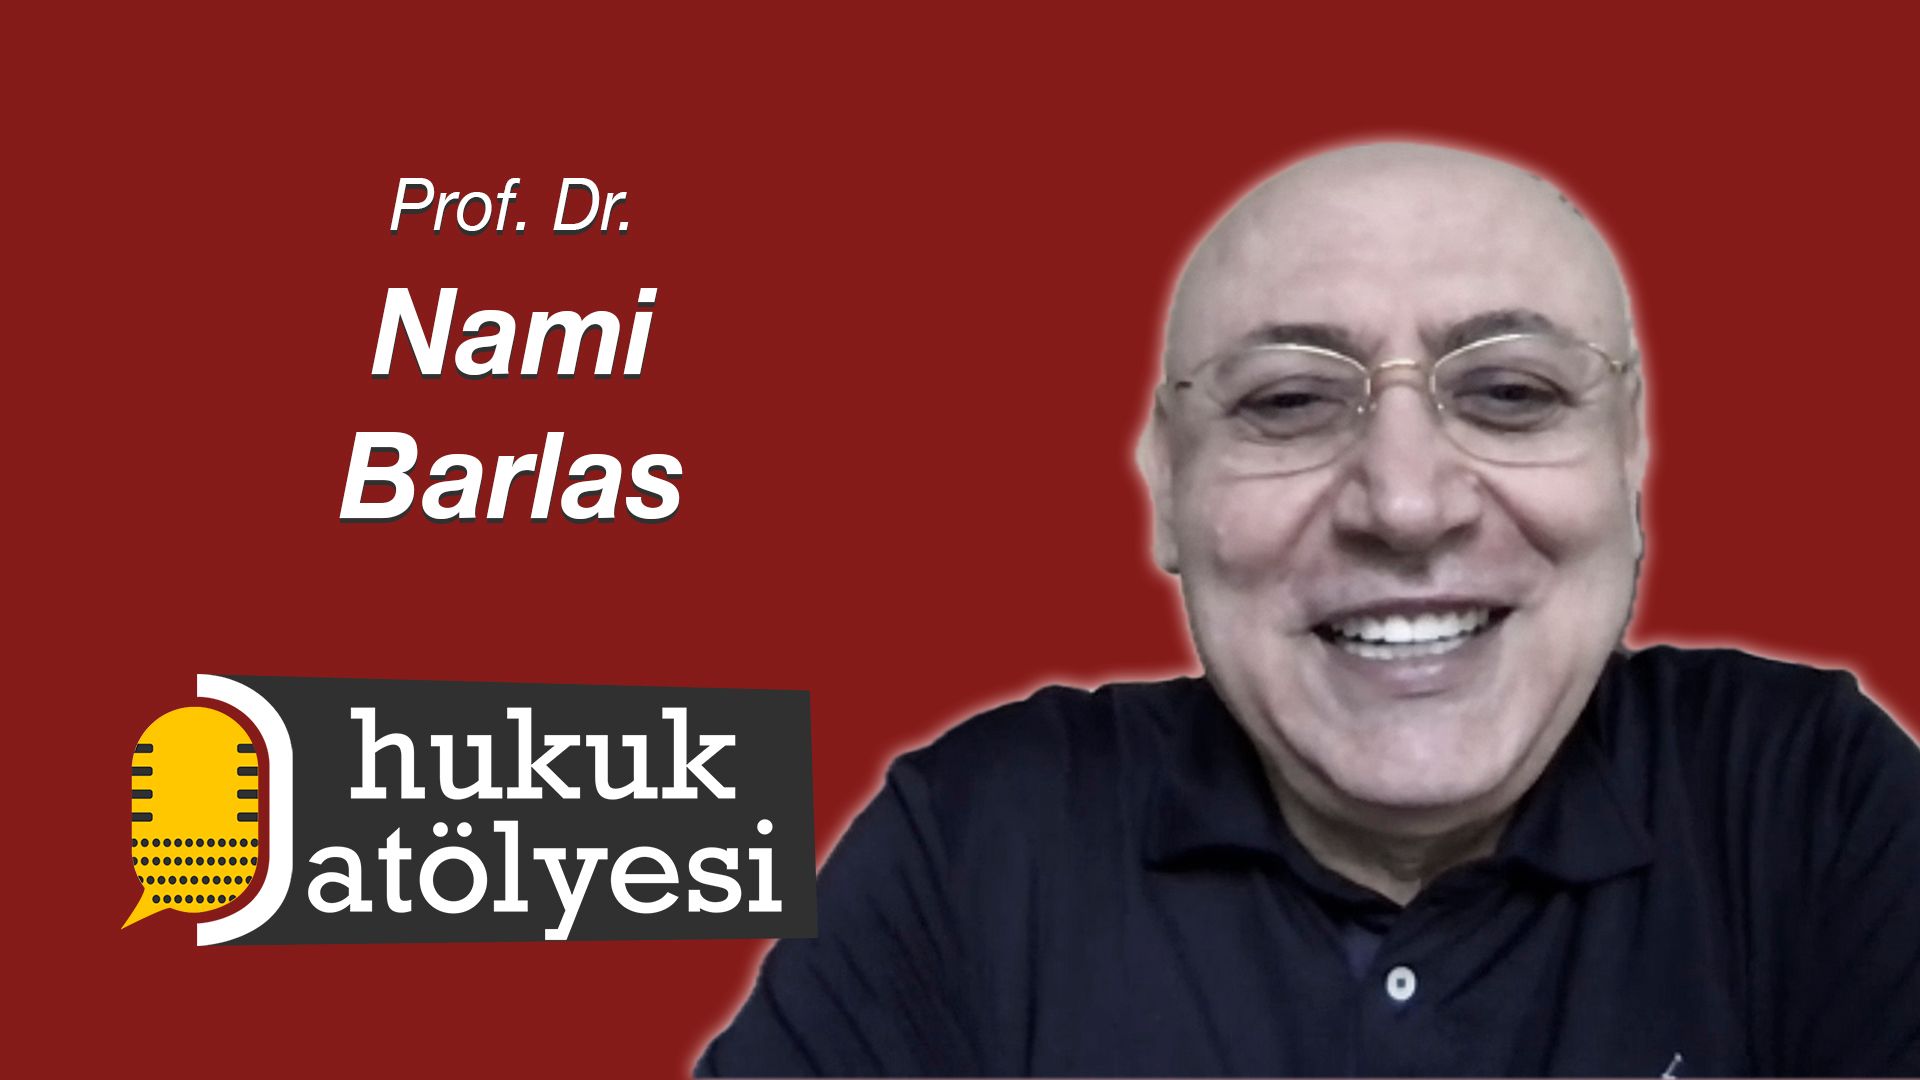 Hukuk Atölyesi'nin 22. Bölüm Konuğu: Prof. Dr. Nami Barlas